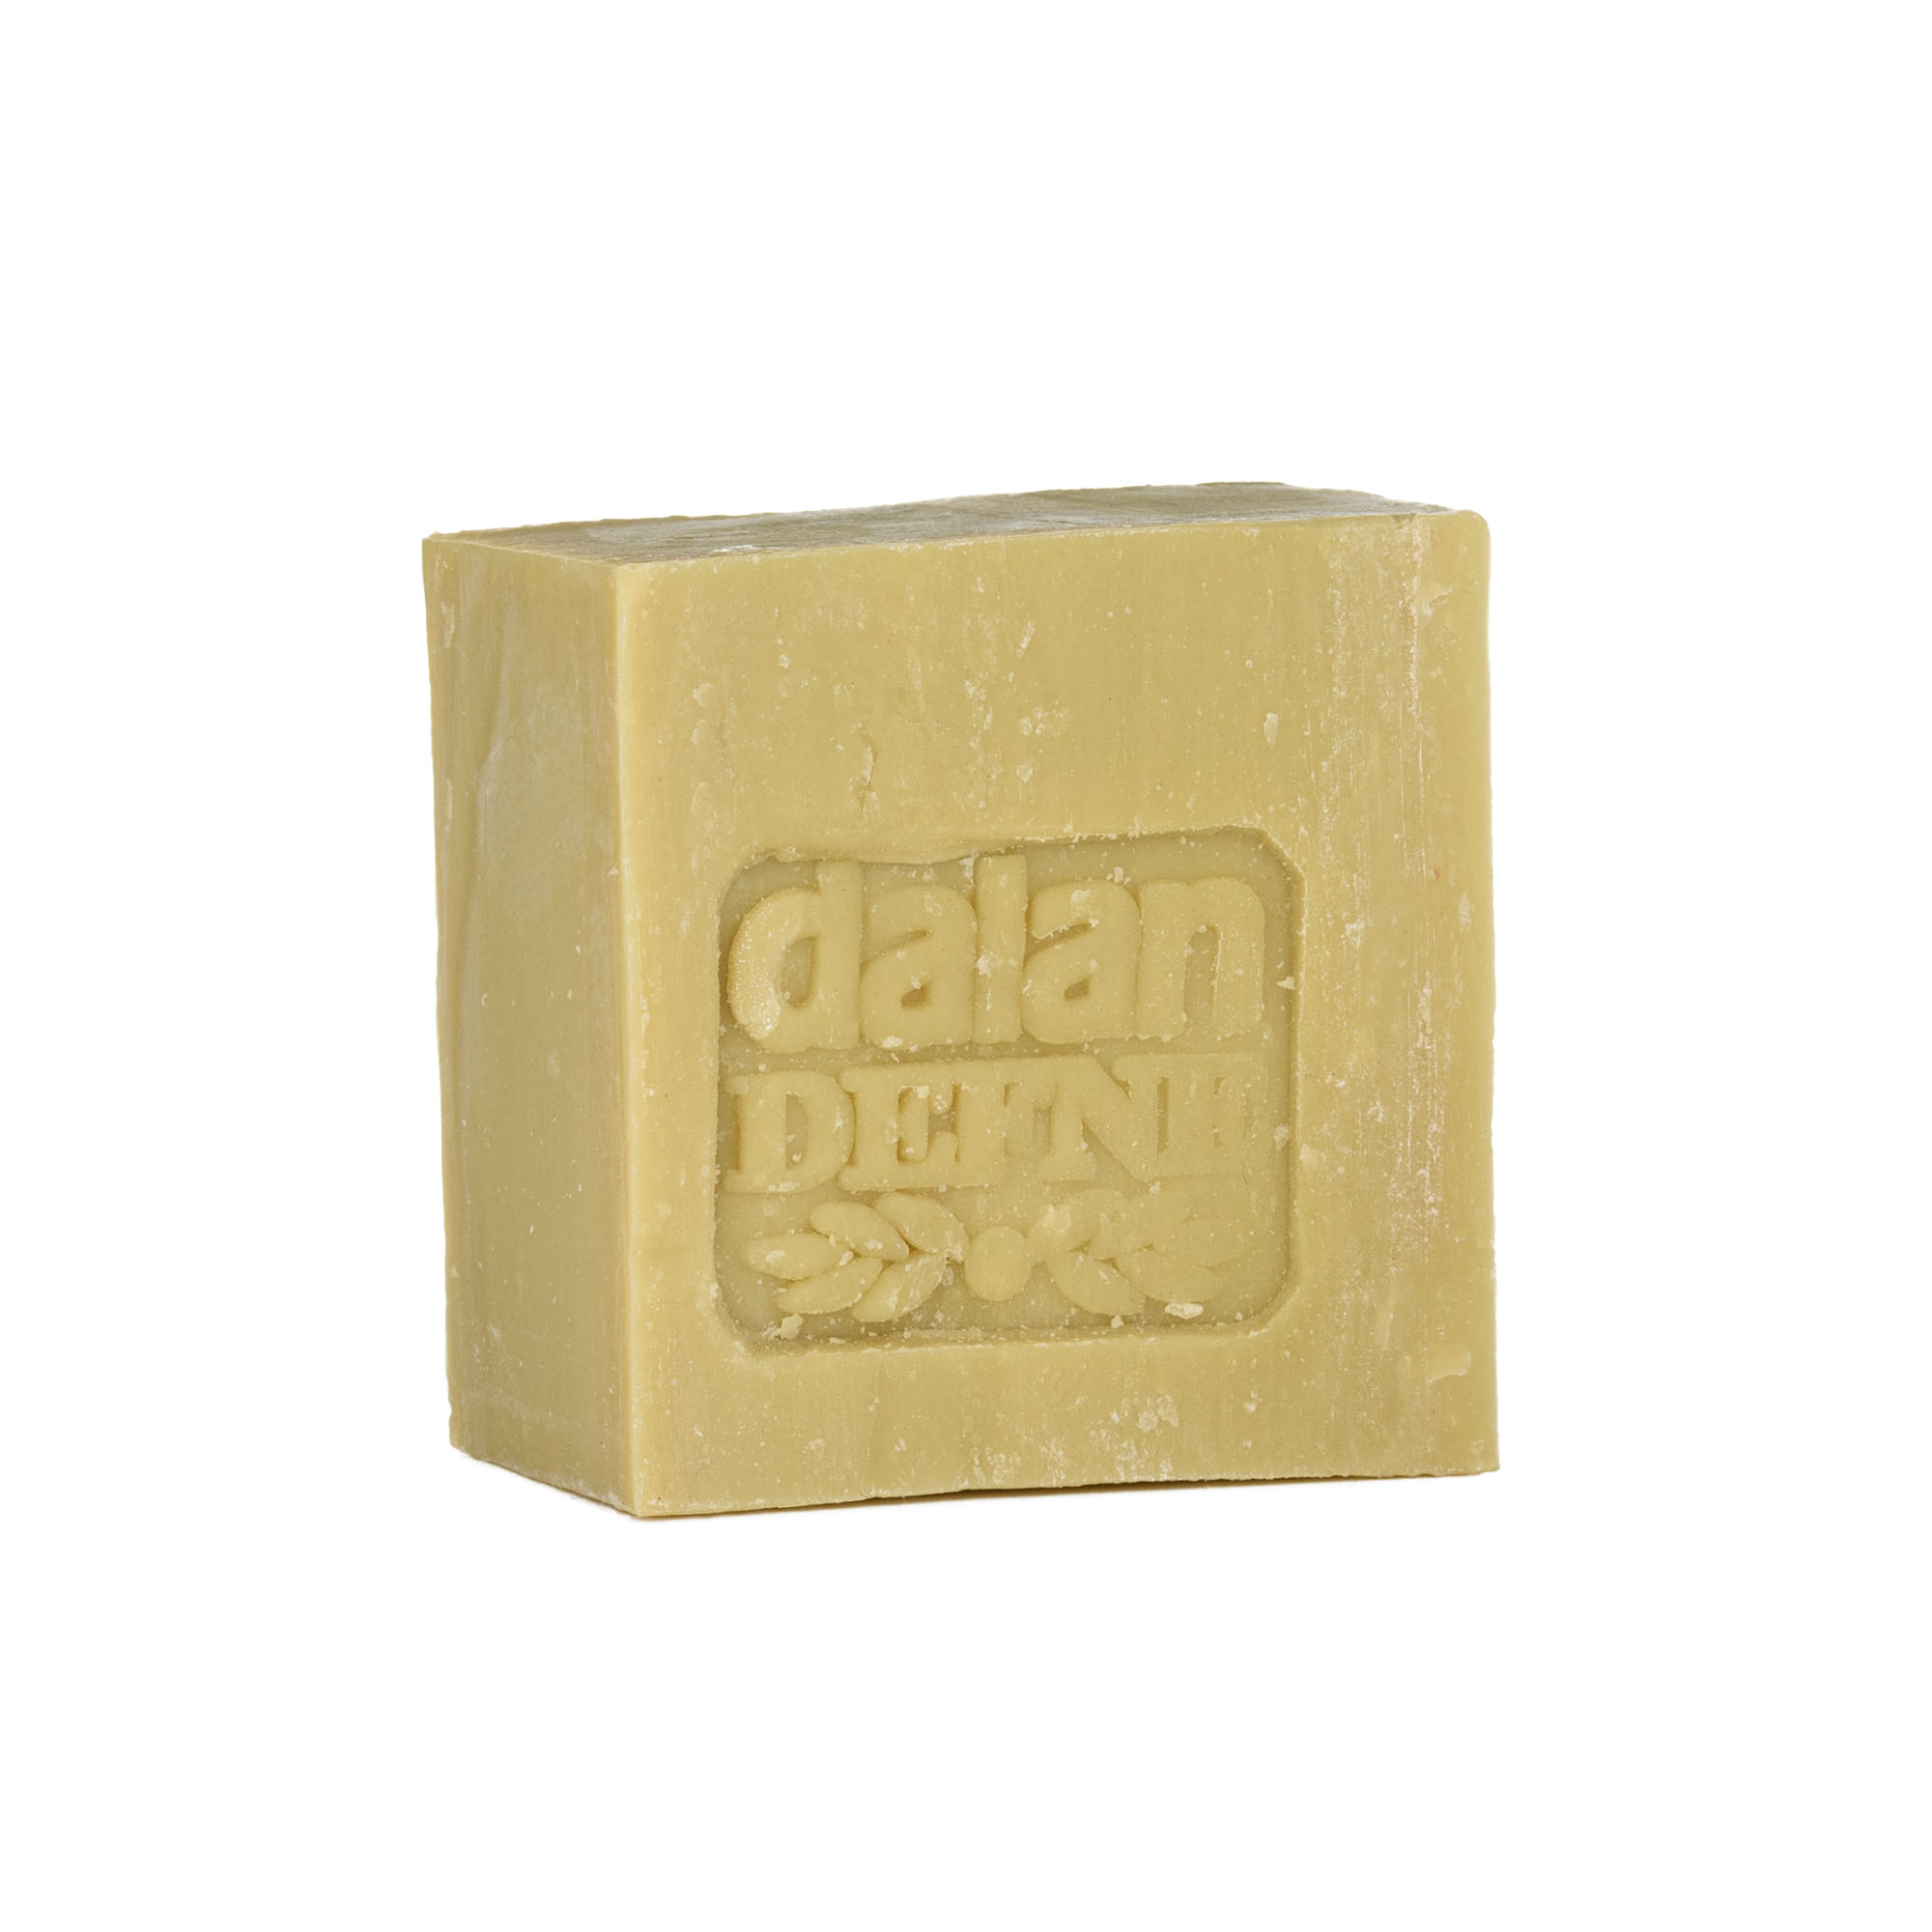 Dalan Antique Lavender Soap